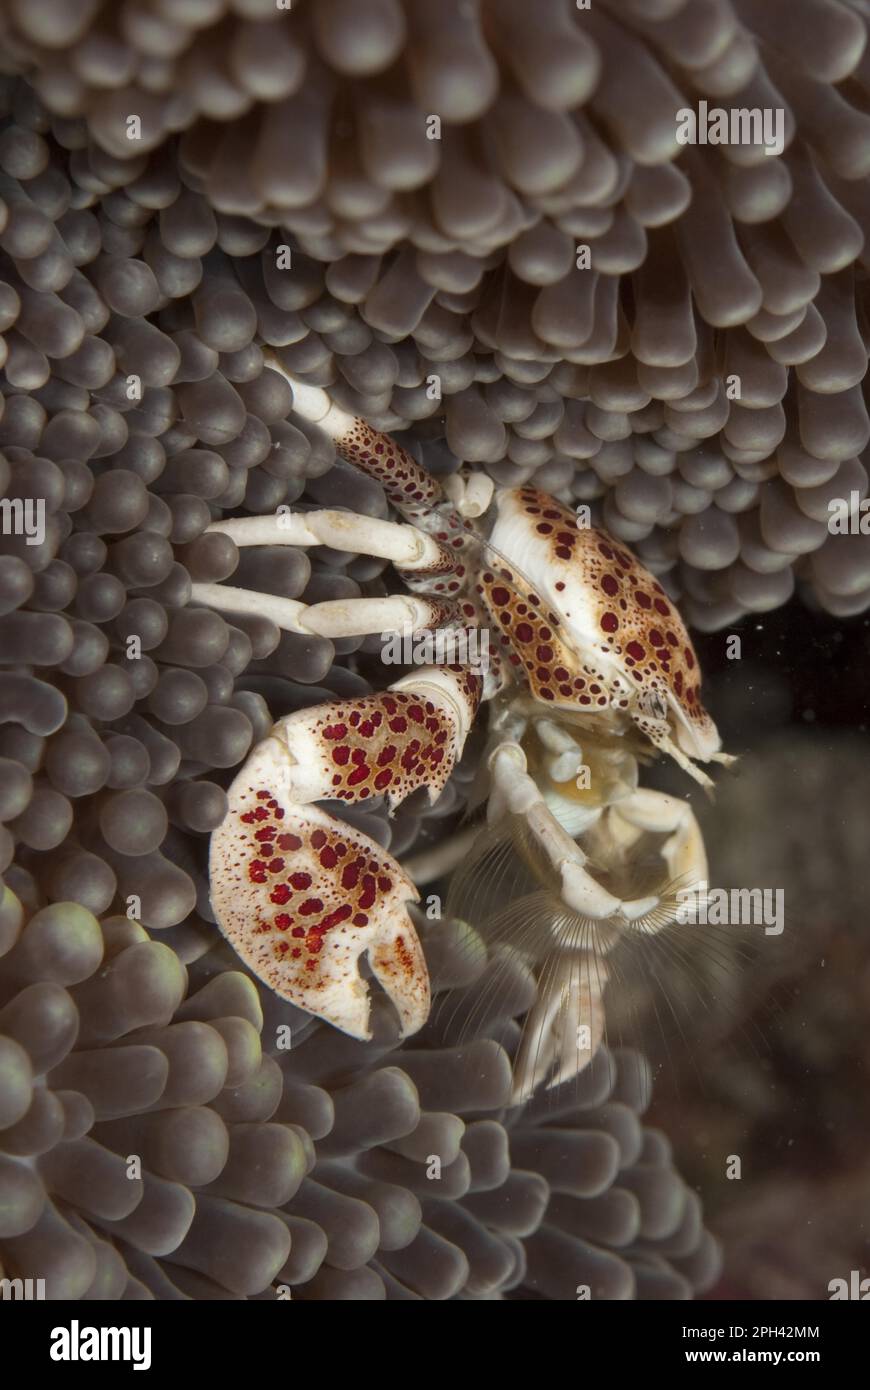 Anemone Porcelain Crab, Spotted Anemone Crab, Anemone Porcelain Crab, Spotted Anemone Crab, porcelain anemone crab (Neopetrolisthes oshimai) Oshima's Stock Photo